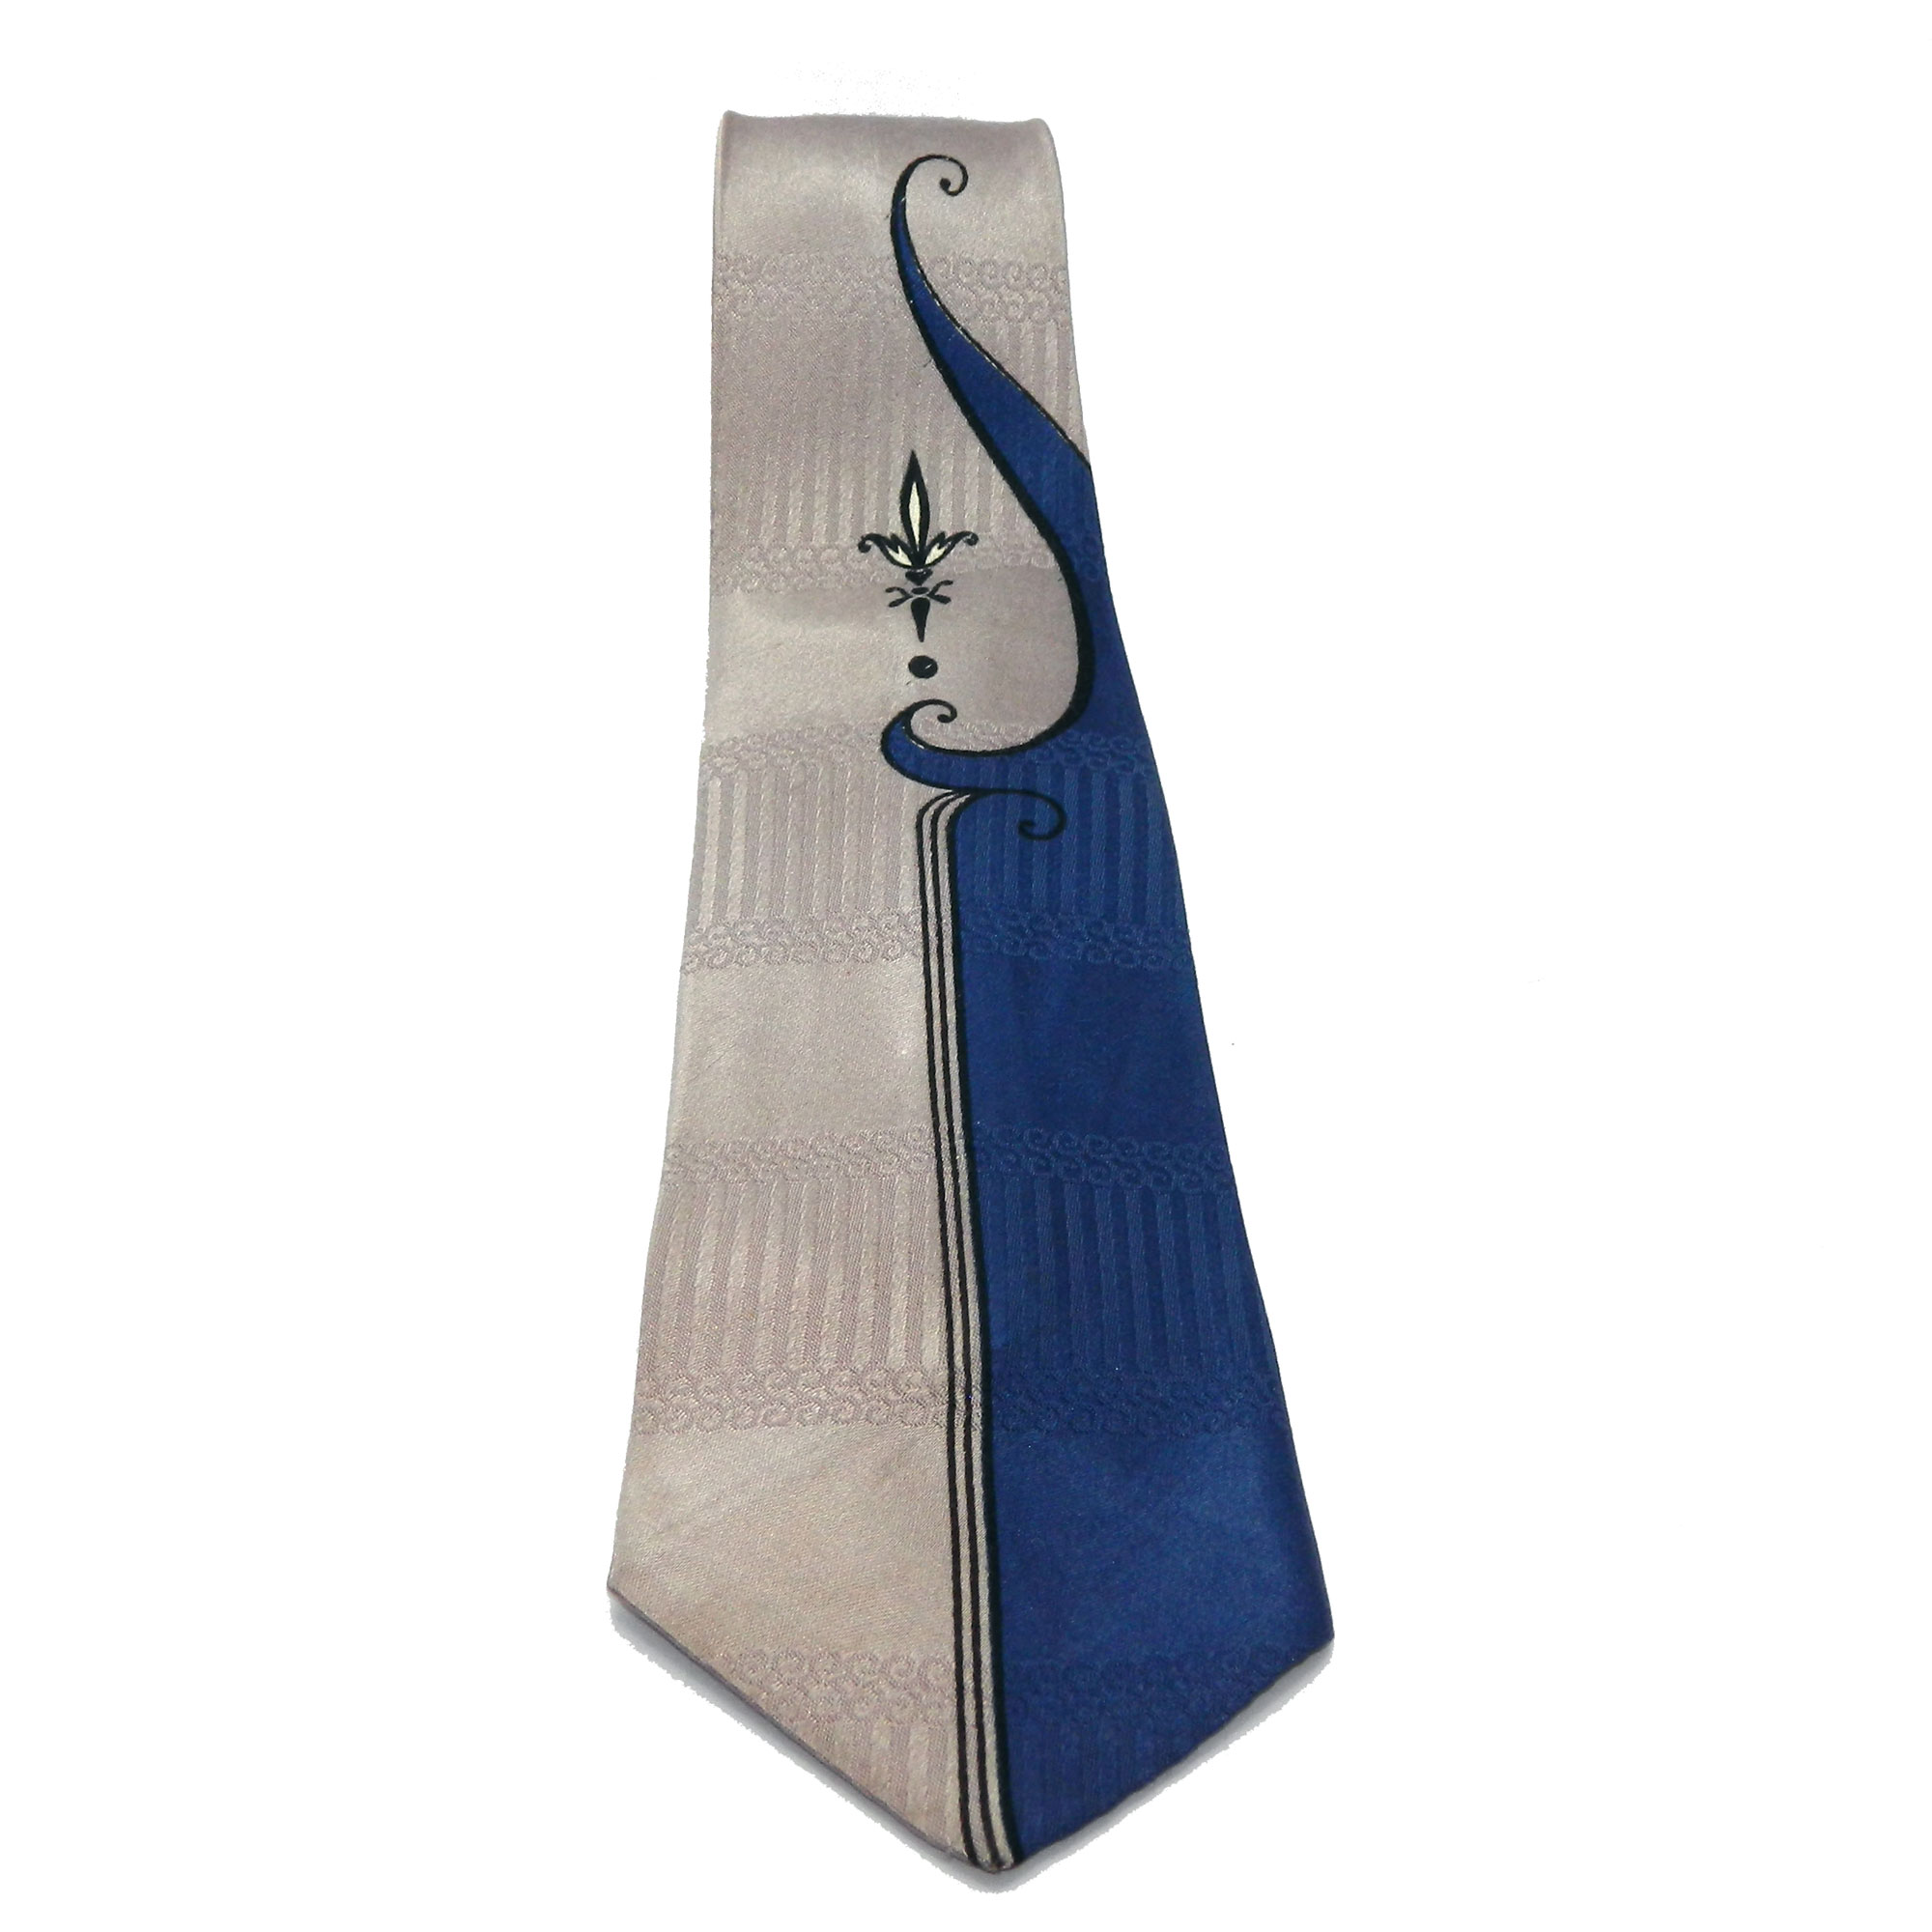 1950s Art Deco tie